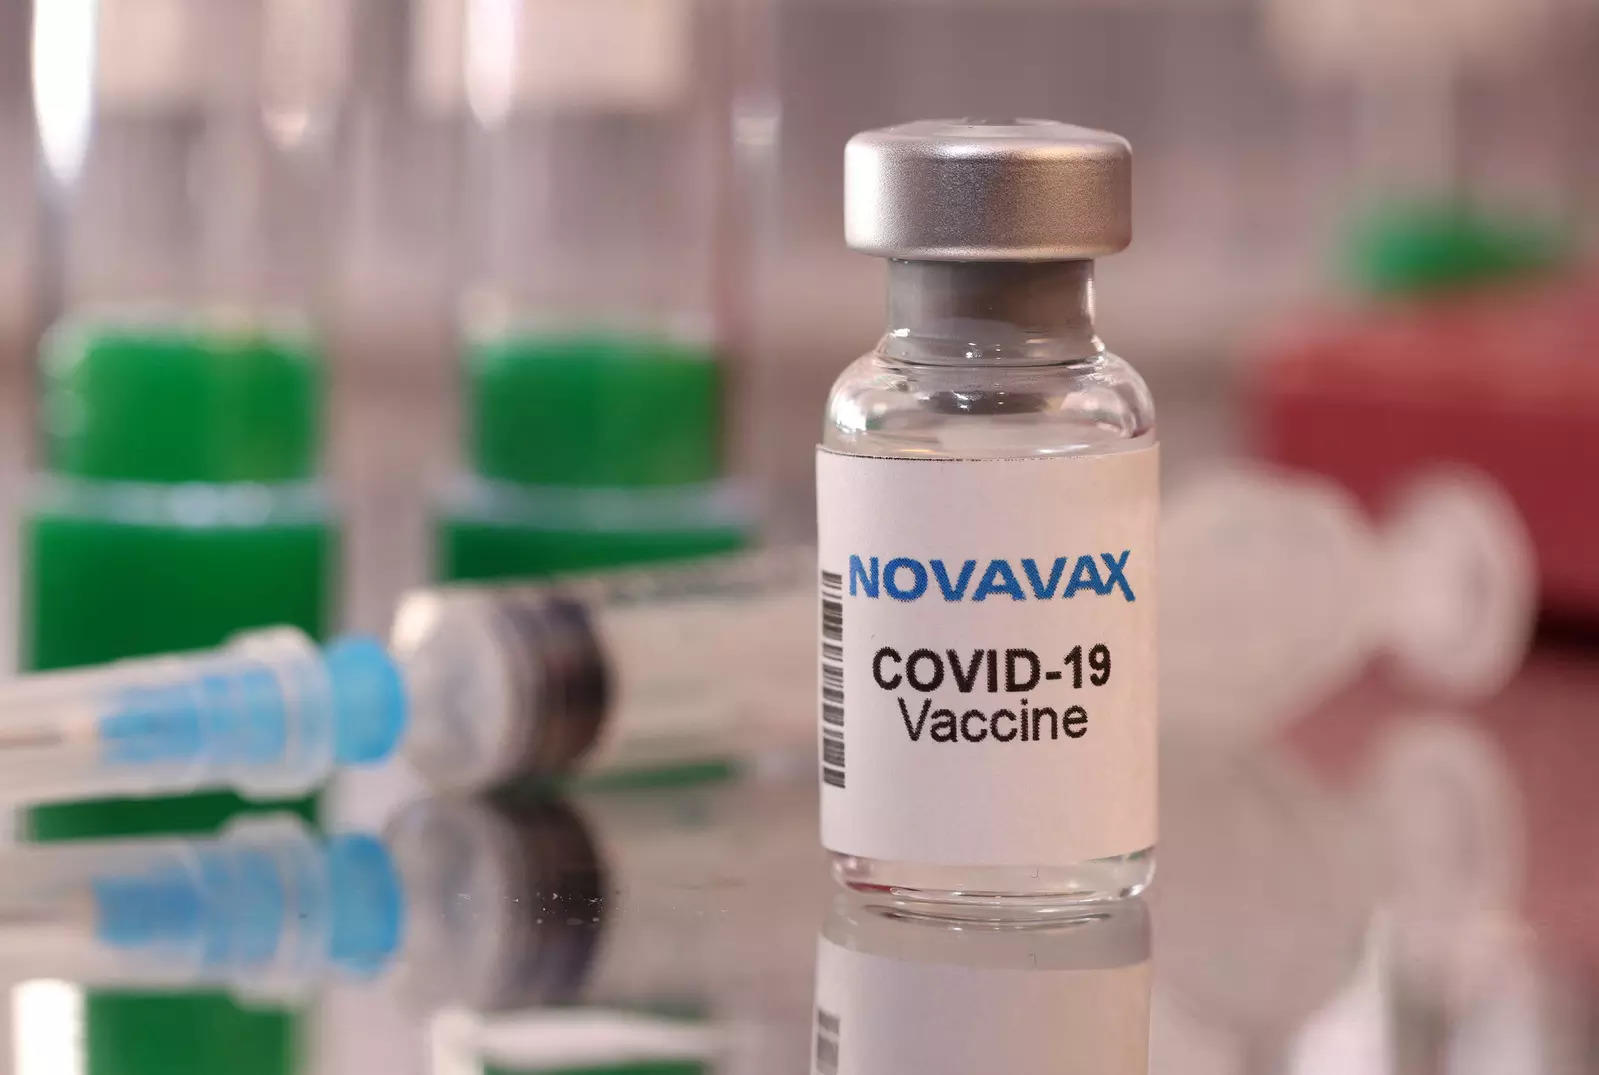 بیش از 196.89 دوز واکسن کووید-19 به ایالات، UT ارائه شده است